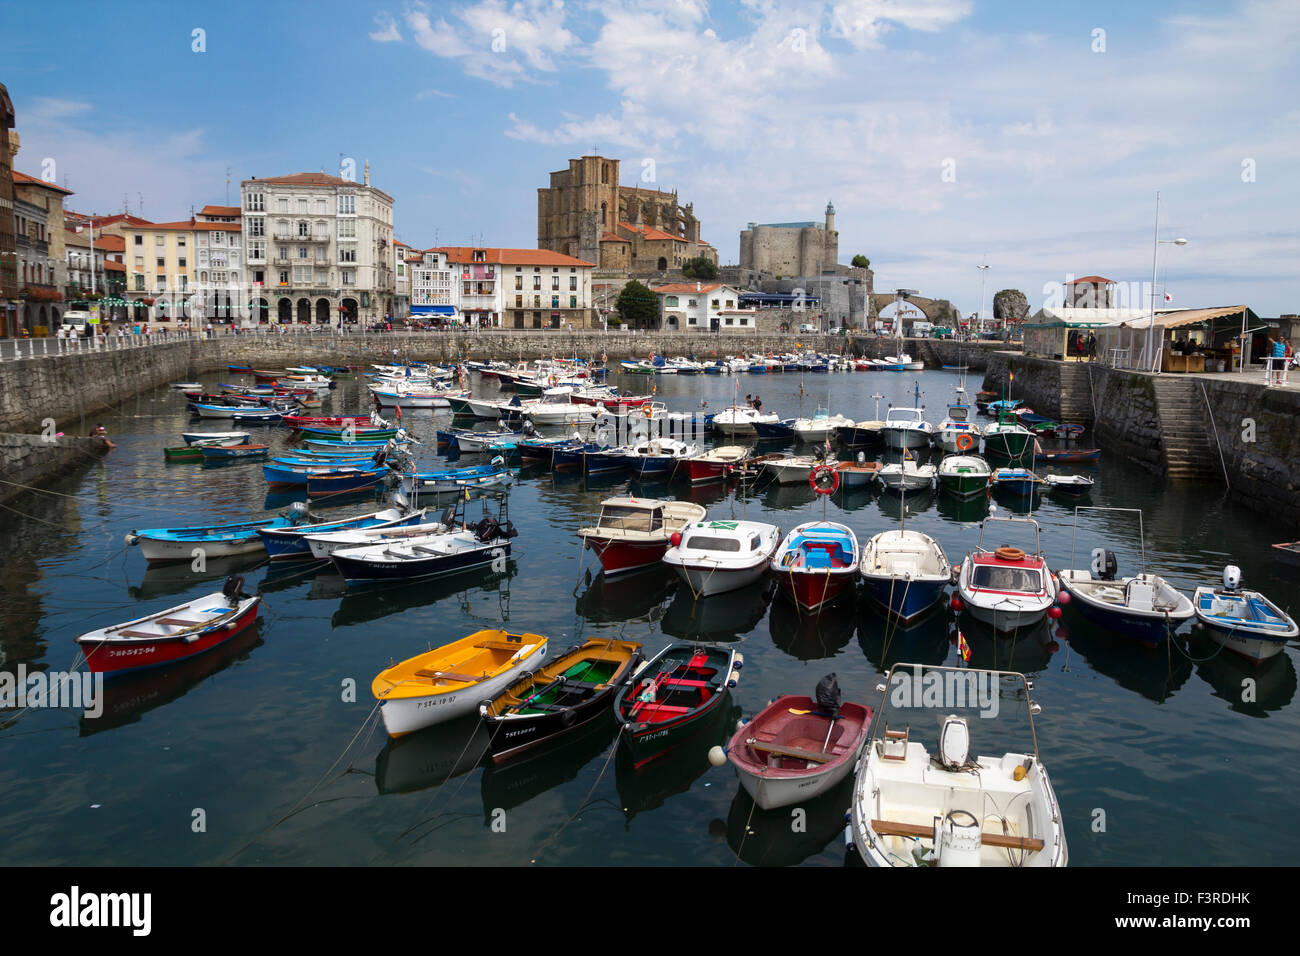 Port local dans le nord de l'Espagne, avec de nombreux bateaux colorés à la ville de Castro Urdiales Banque D'Images